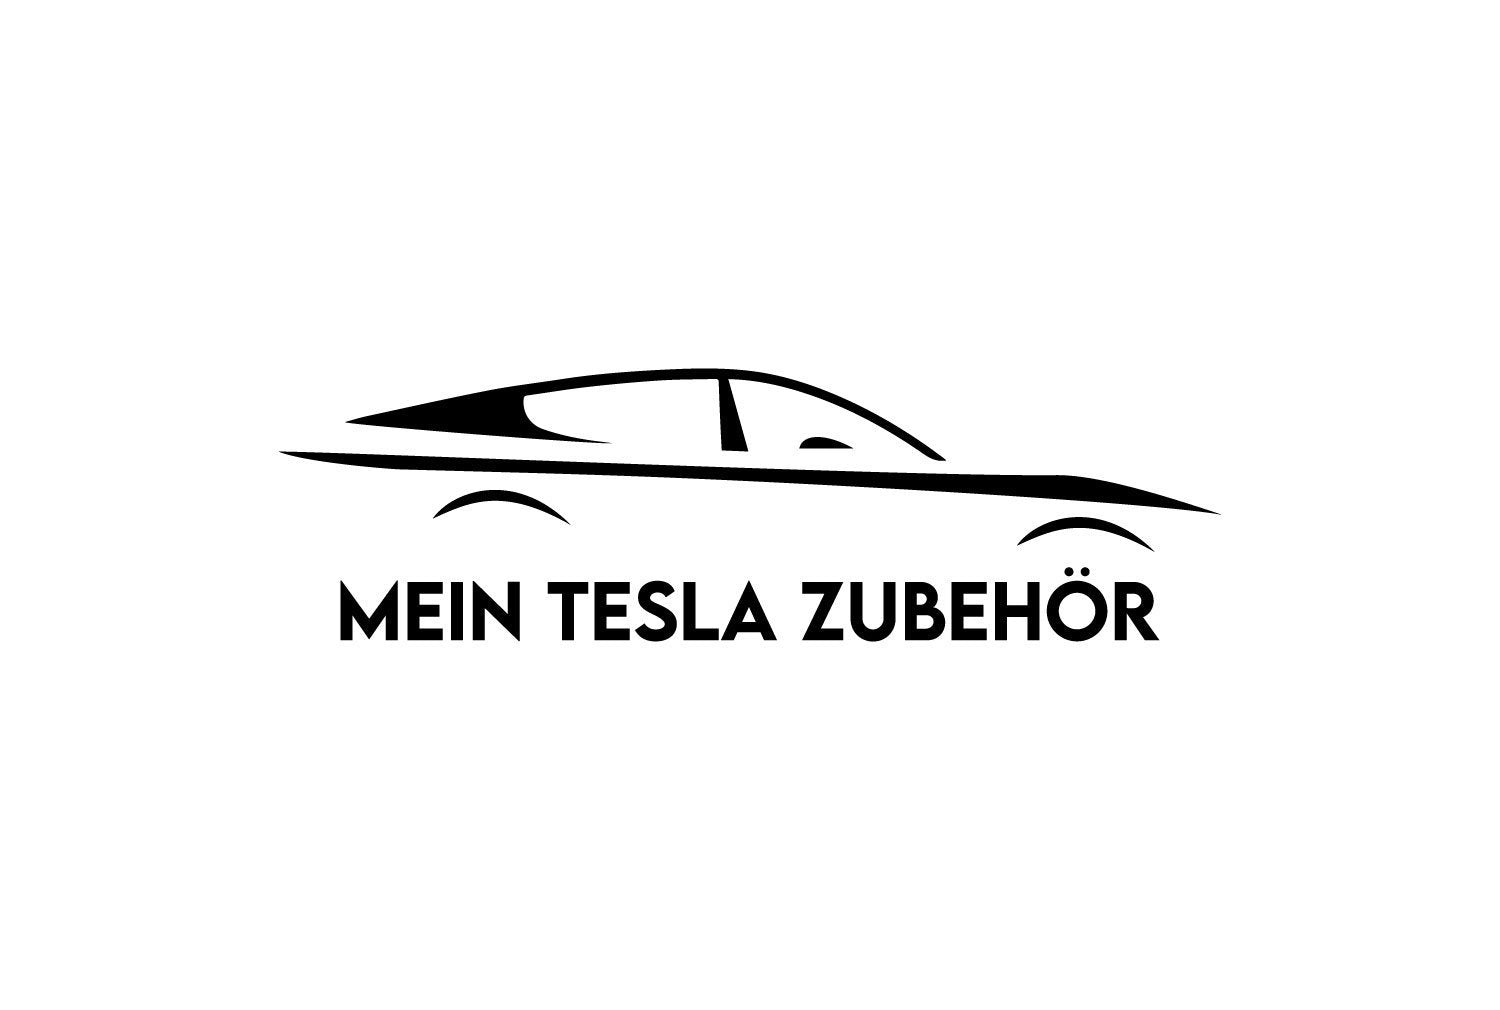 http://www.meinteslazubehoer.de/cdn/shop/files/Mein-Tesla-Zubehor-1_f64d3ae7-f330-427a-a3c5-deda79c85d46.jpg?v=1598631368